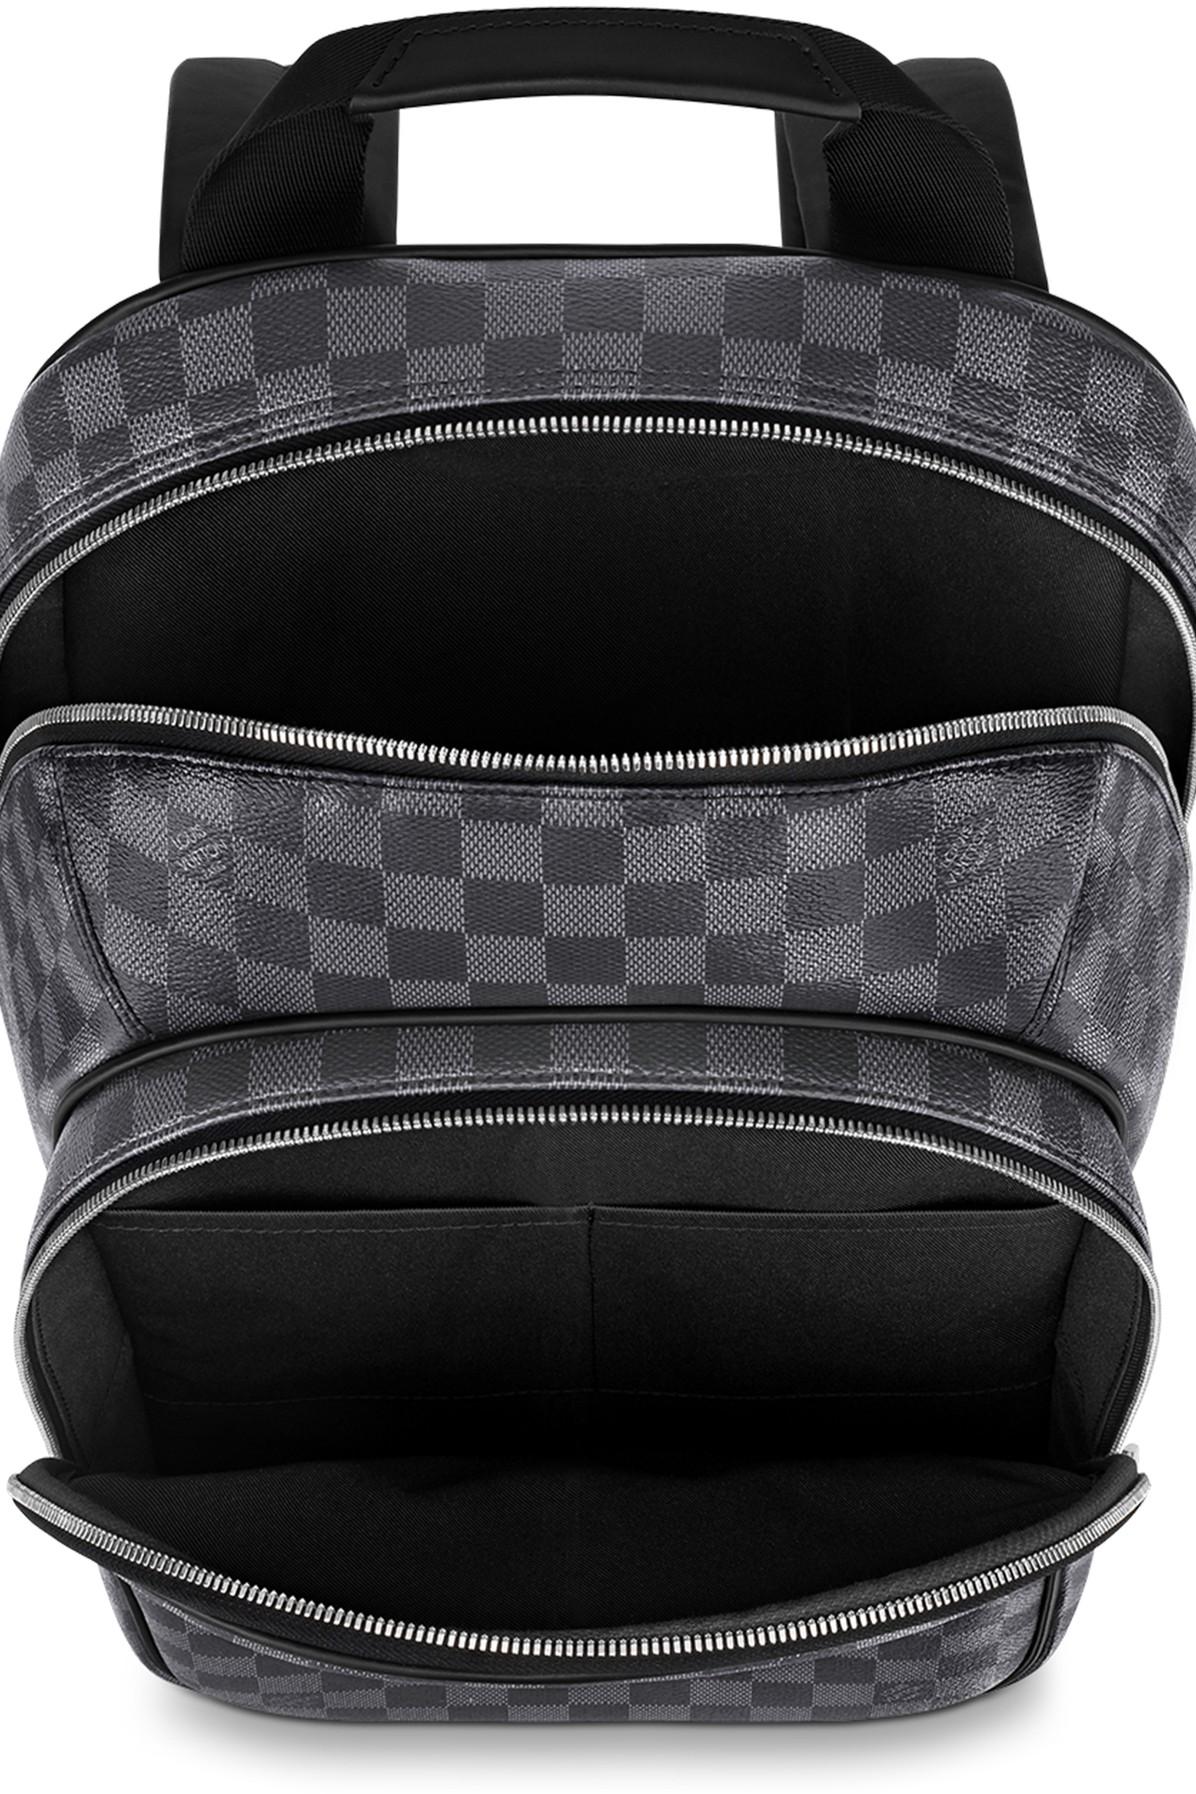 Michael Backpack Louis Vuitton Bags for Men - Vestiaire Collective